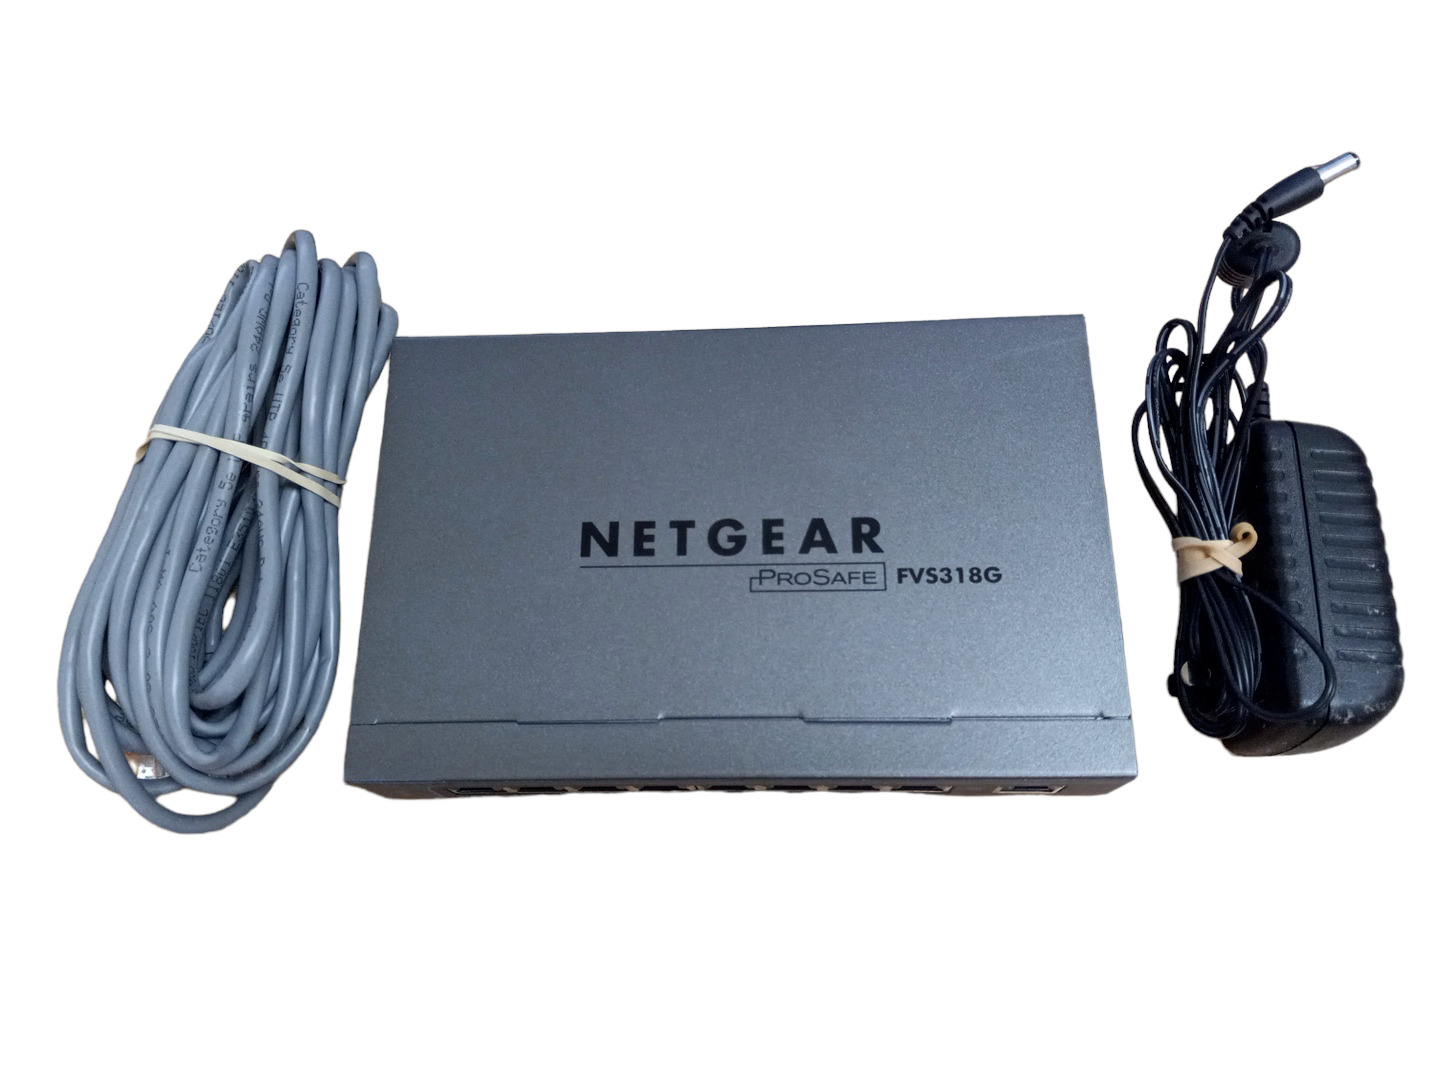 Netgear ProSafe FVS318G 8-Port Gigabit VPN Firewall Router